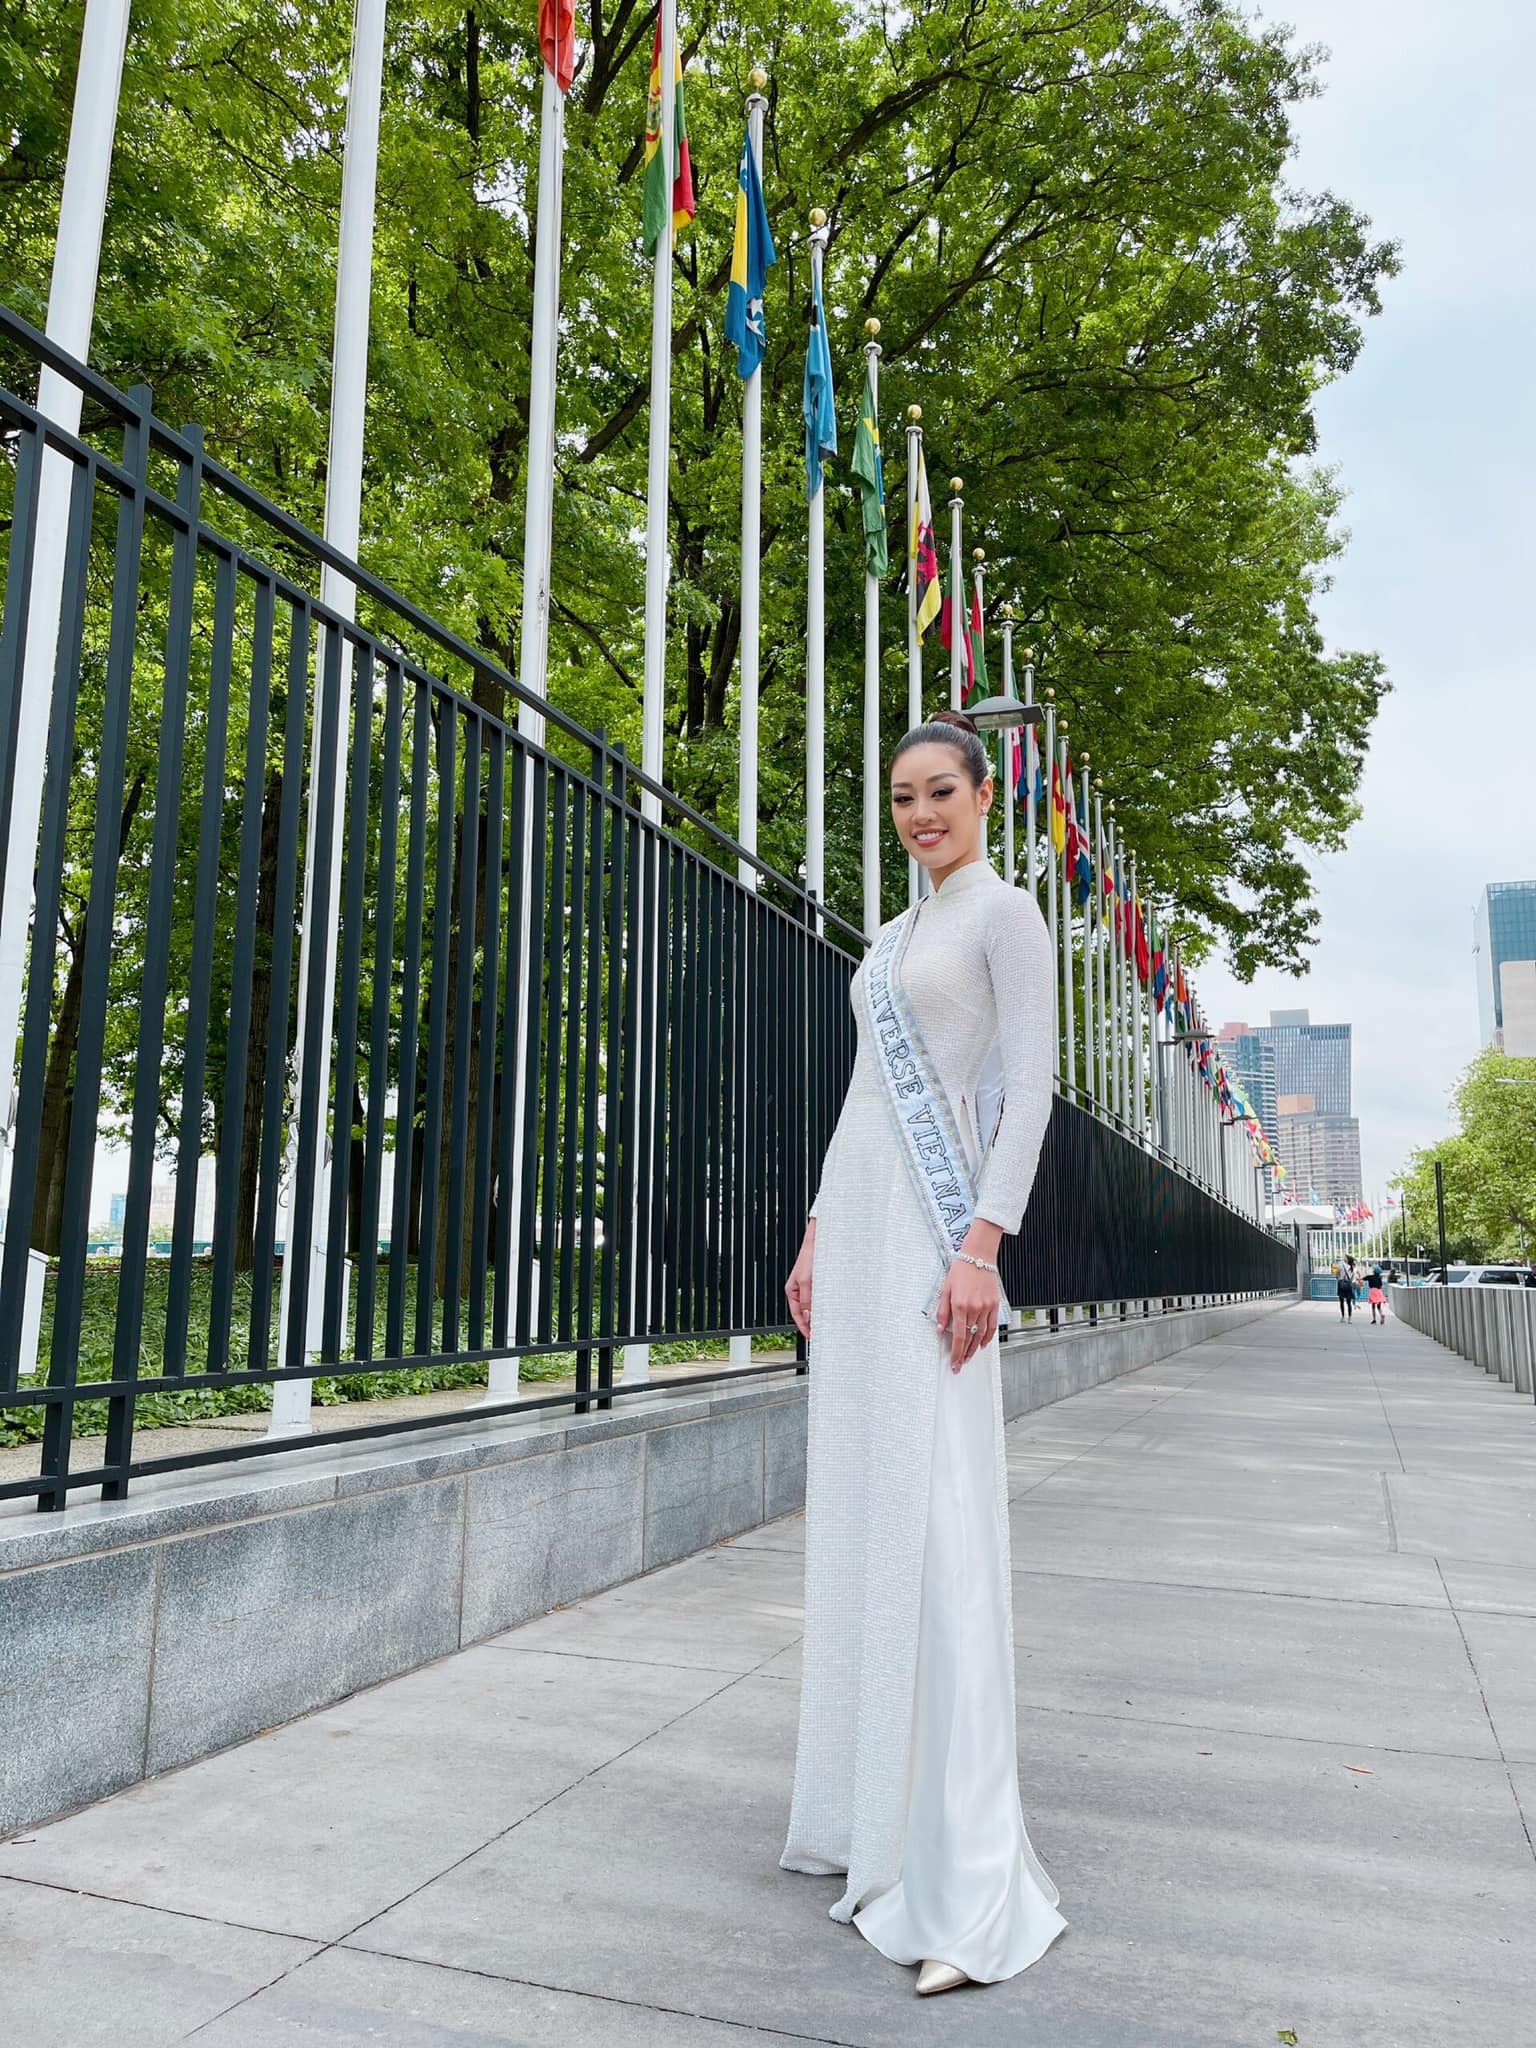 Hoa hậu Khánh Vân khoe dáng với Áo dài Việt Nam trên đường phố NewYork, đúng là nữ thần Áo dài có khác!